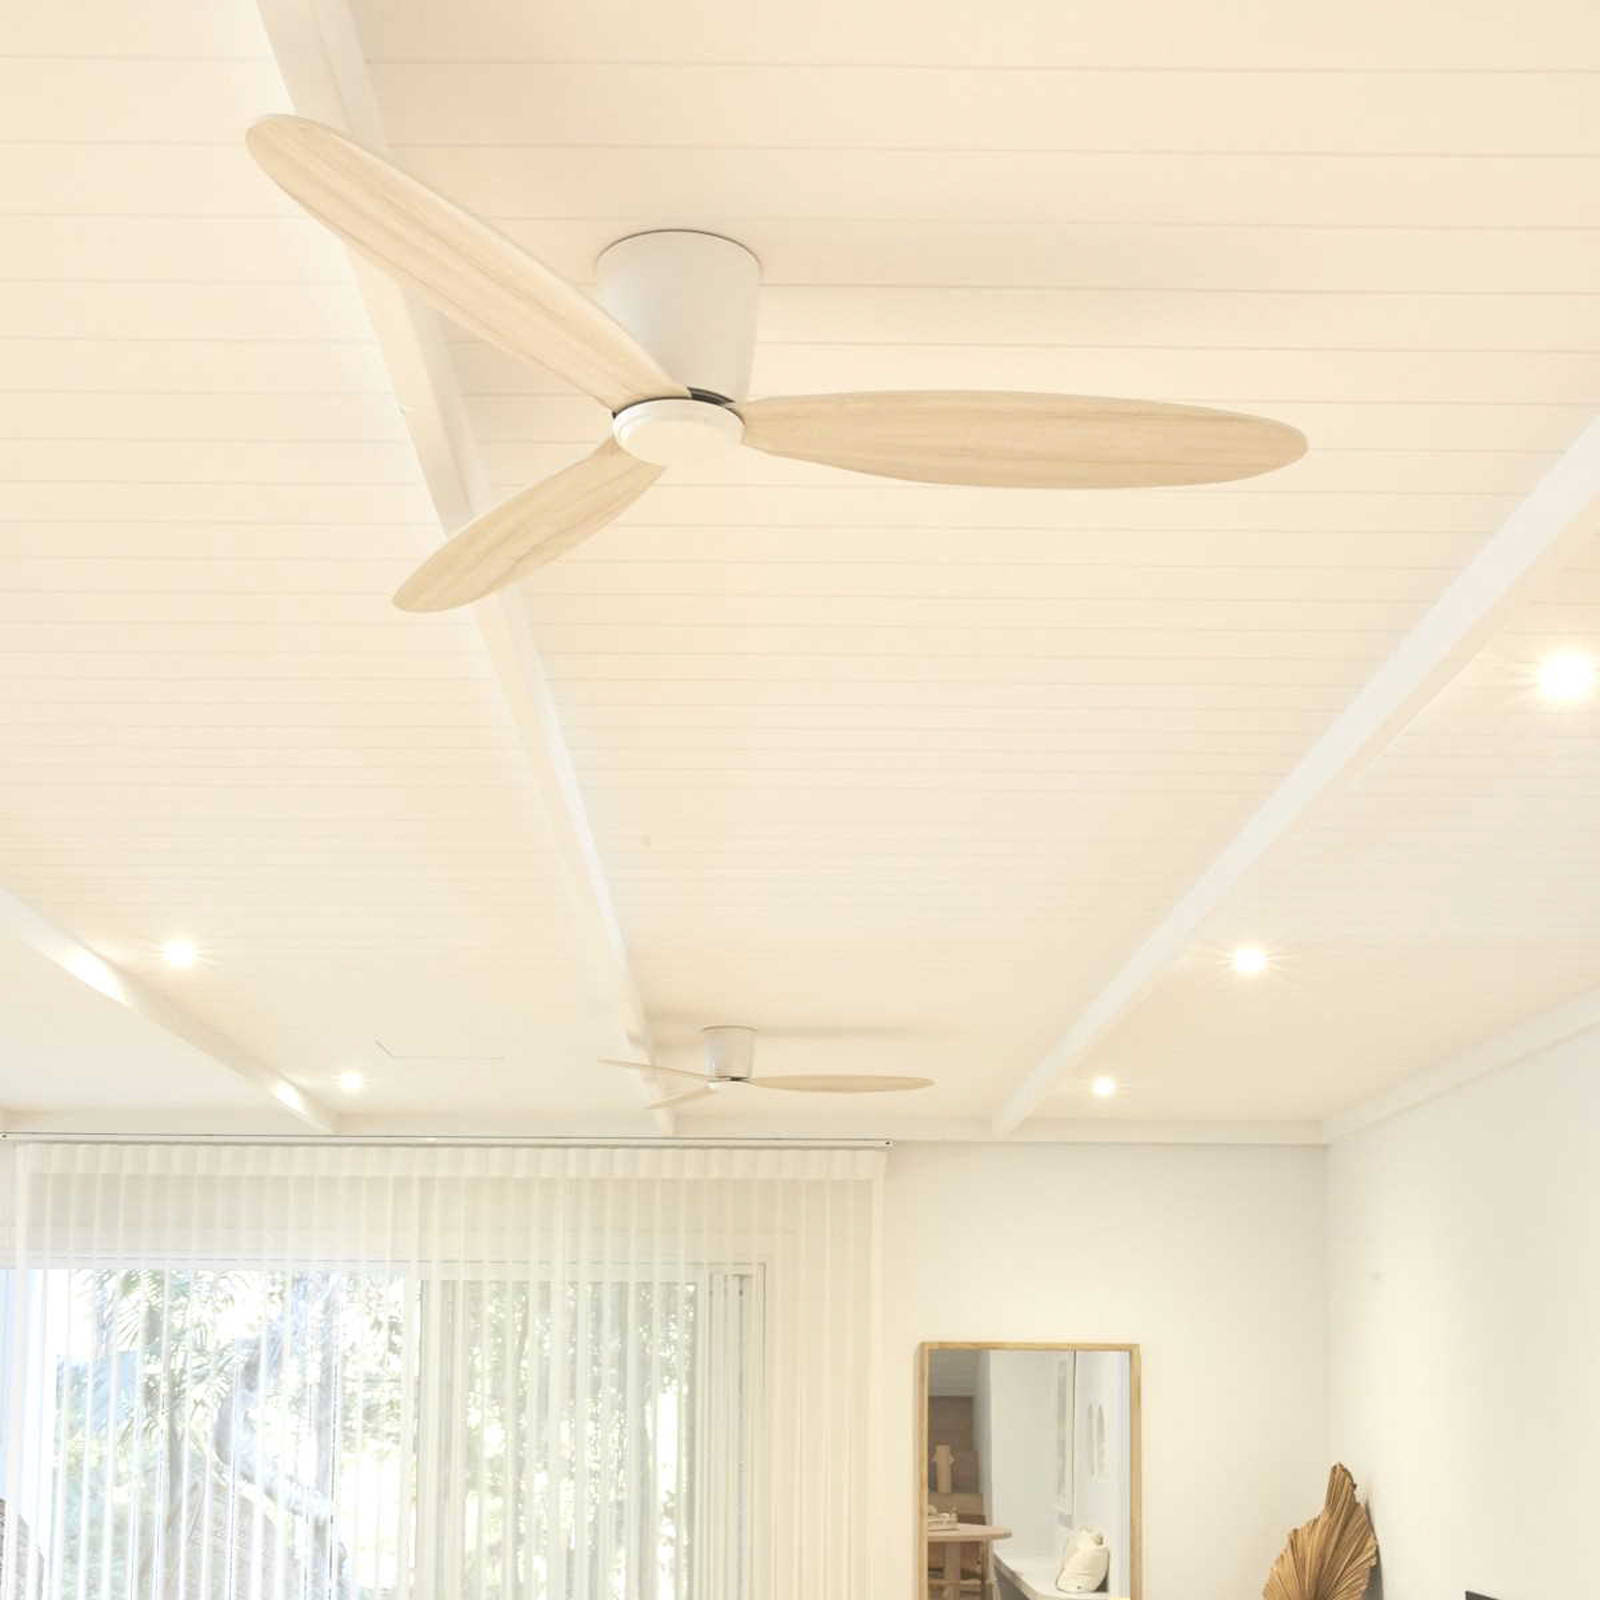 Beacon ceiling fan Airfusion Radar oak/white DC quiet